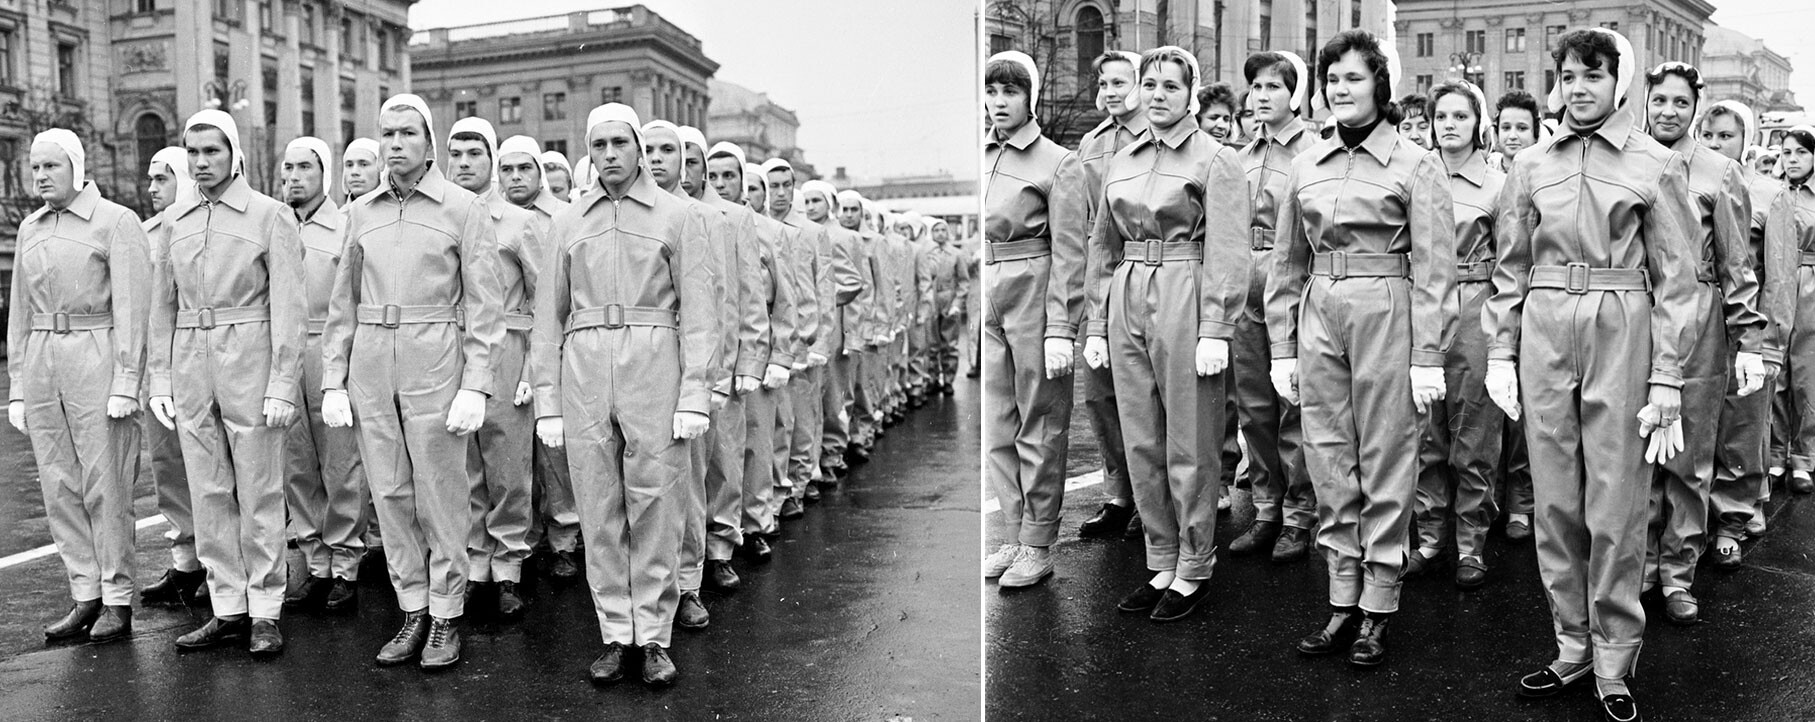 Des ouvriers d'usine ressemblant à des personnages de Star Wars font la queue pour la parade, 1963.

